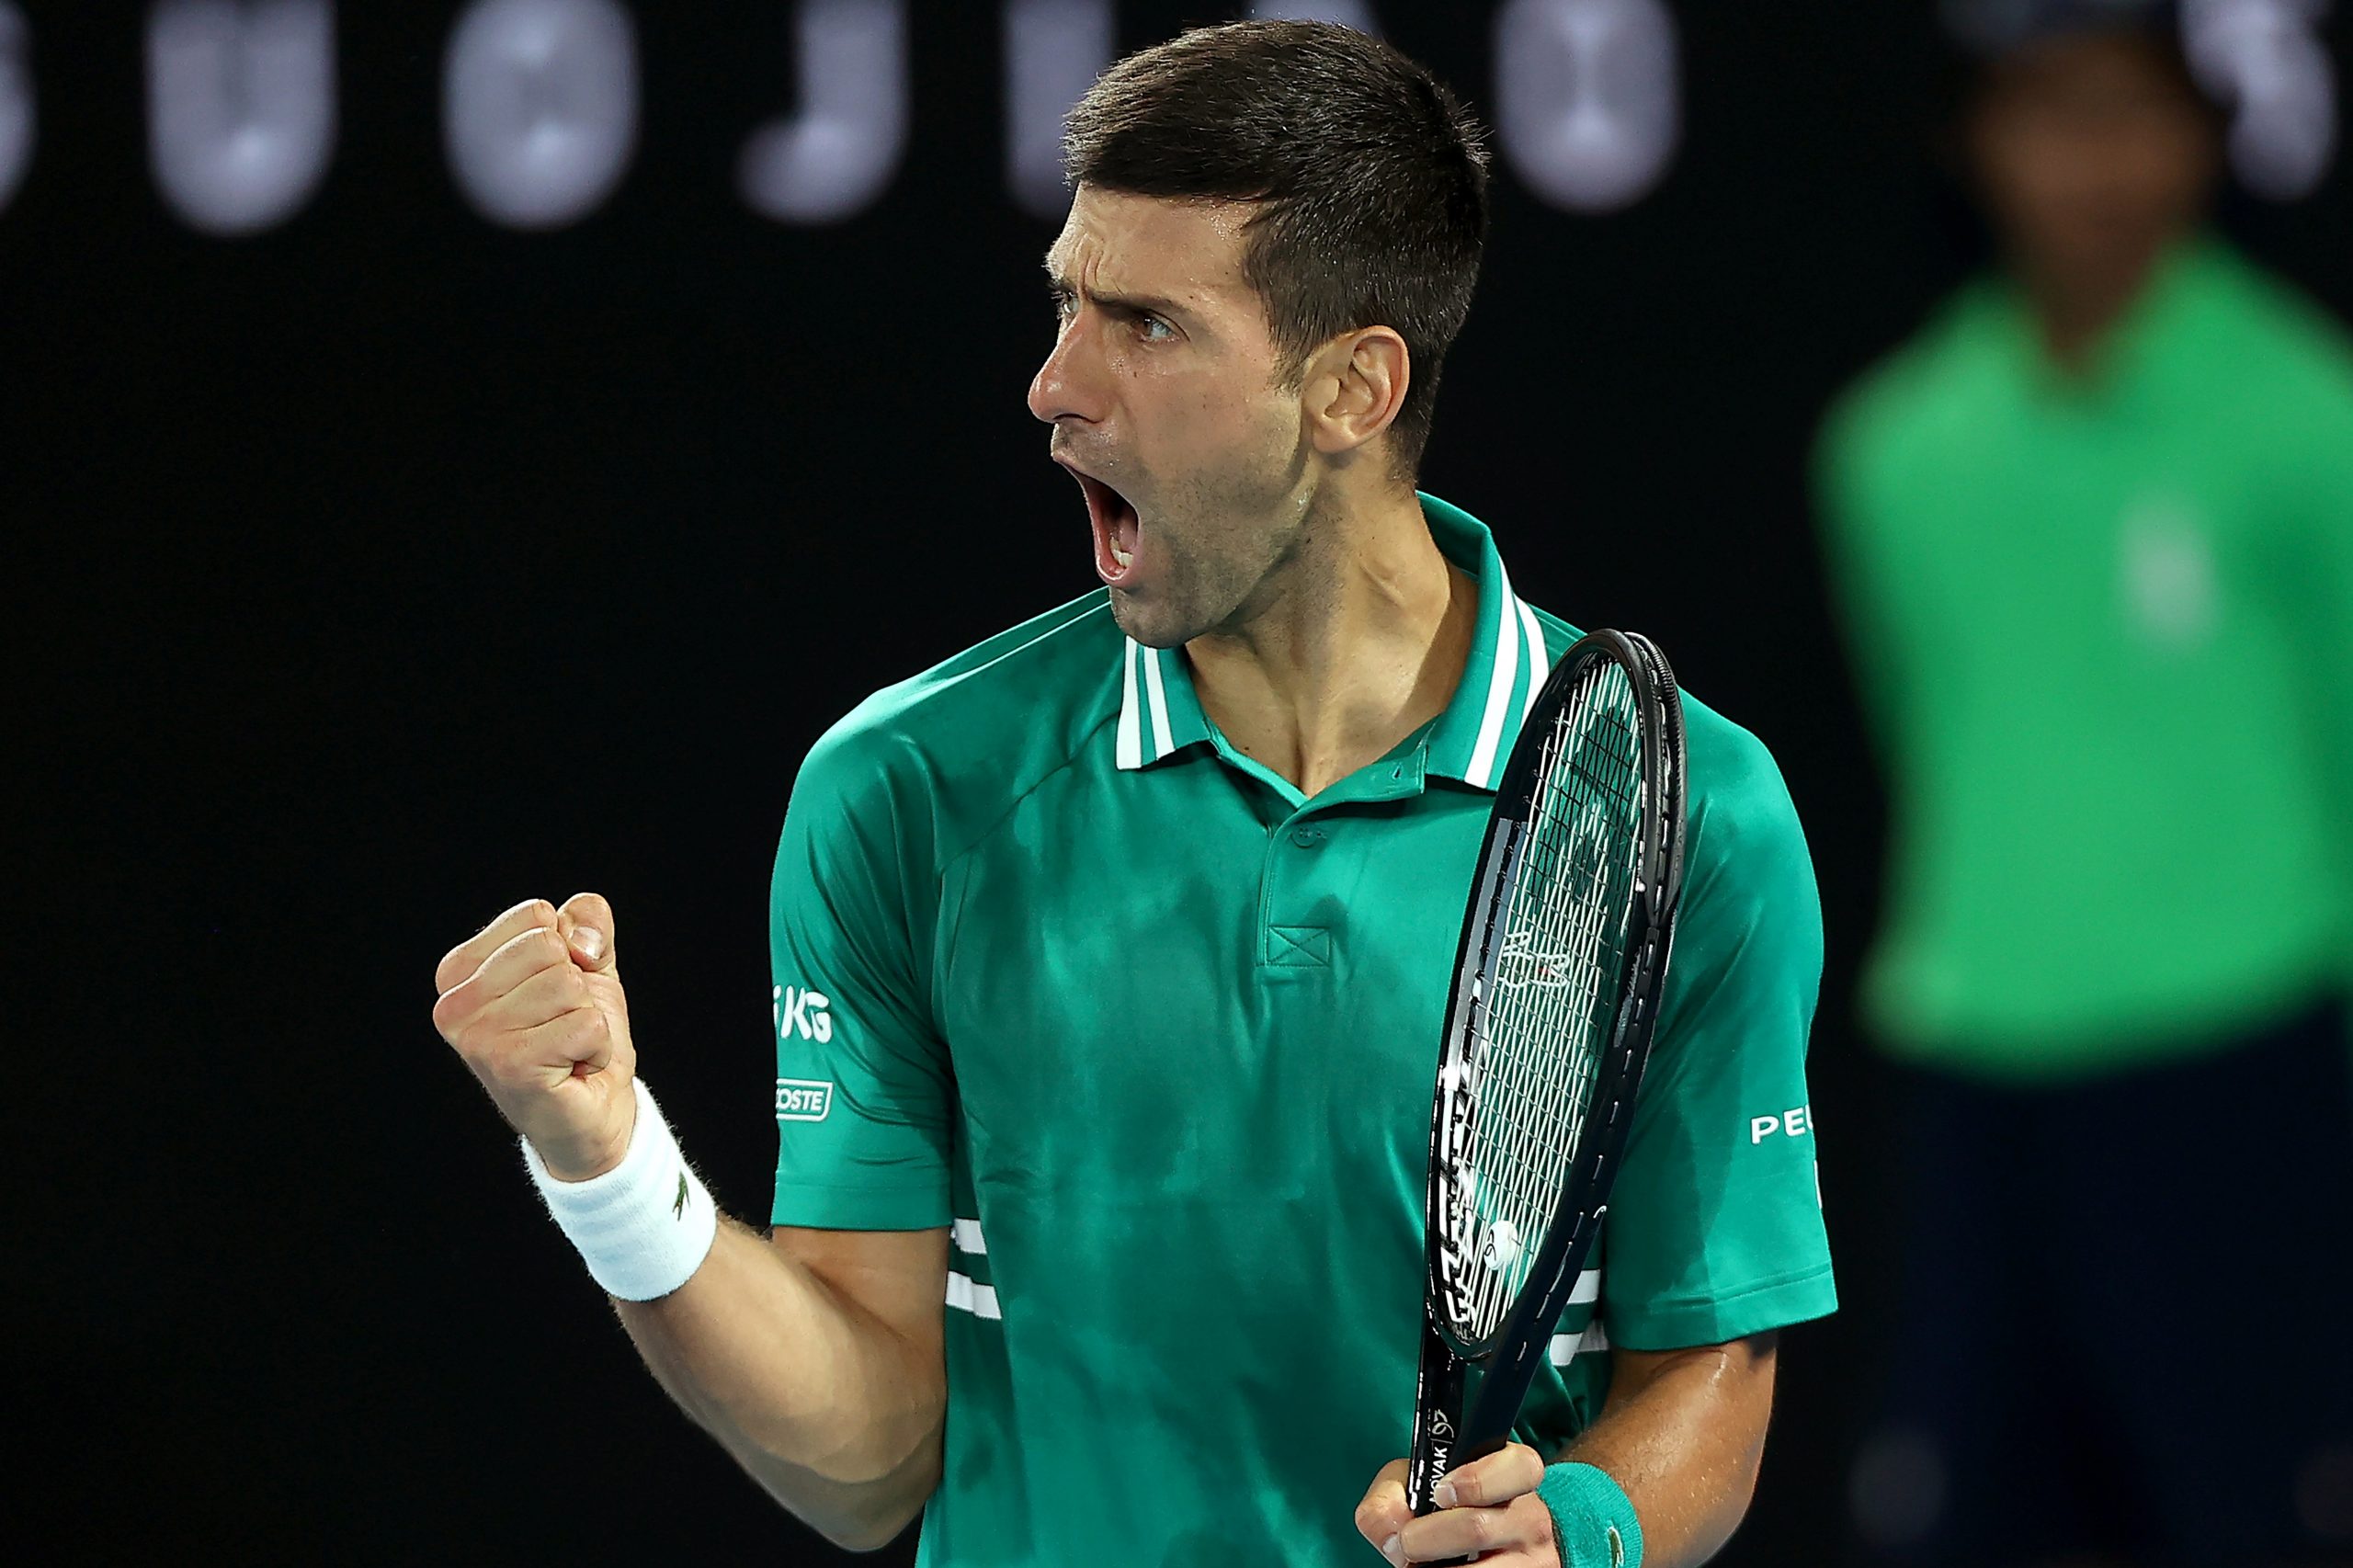 Novak Djokovic recorde Roger Federer 311 semanas no líder do ranking mundial da ATP